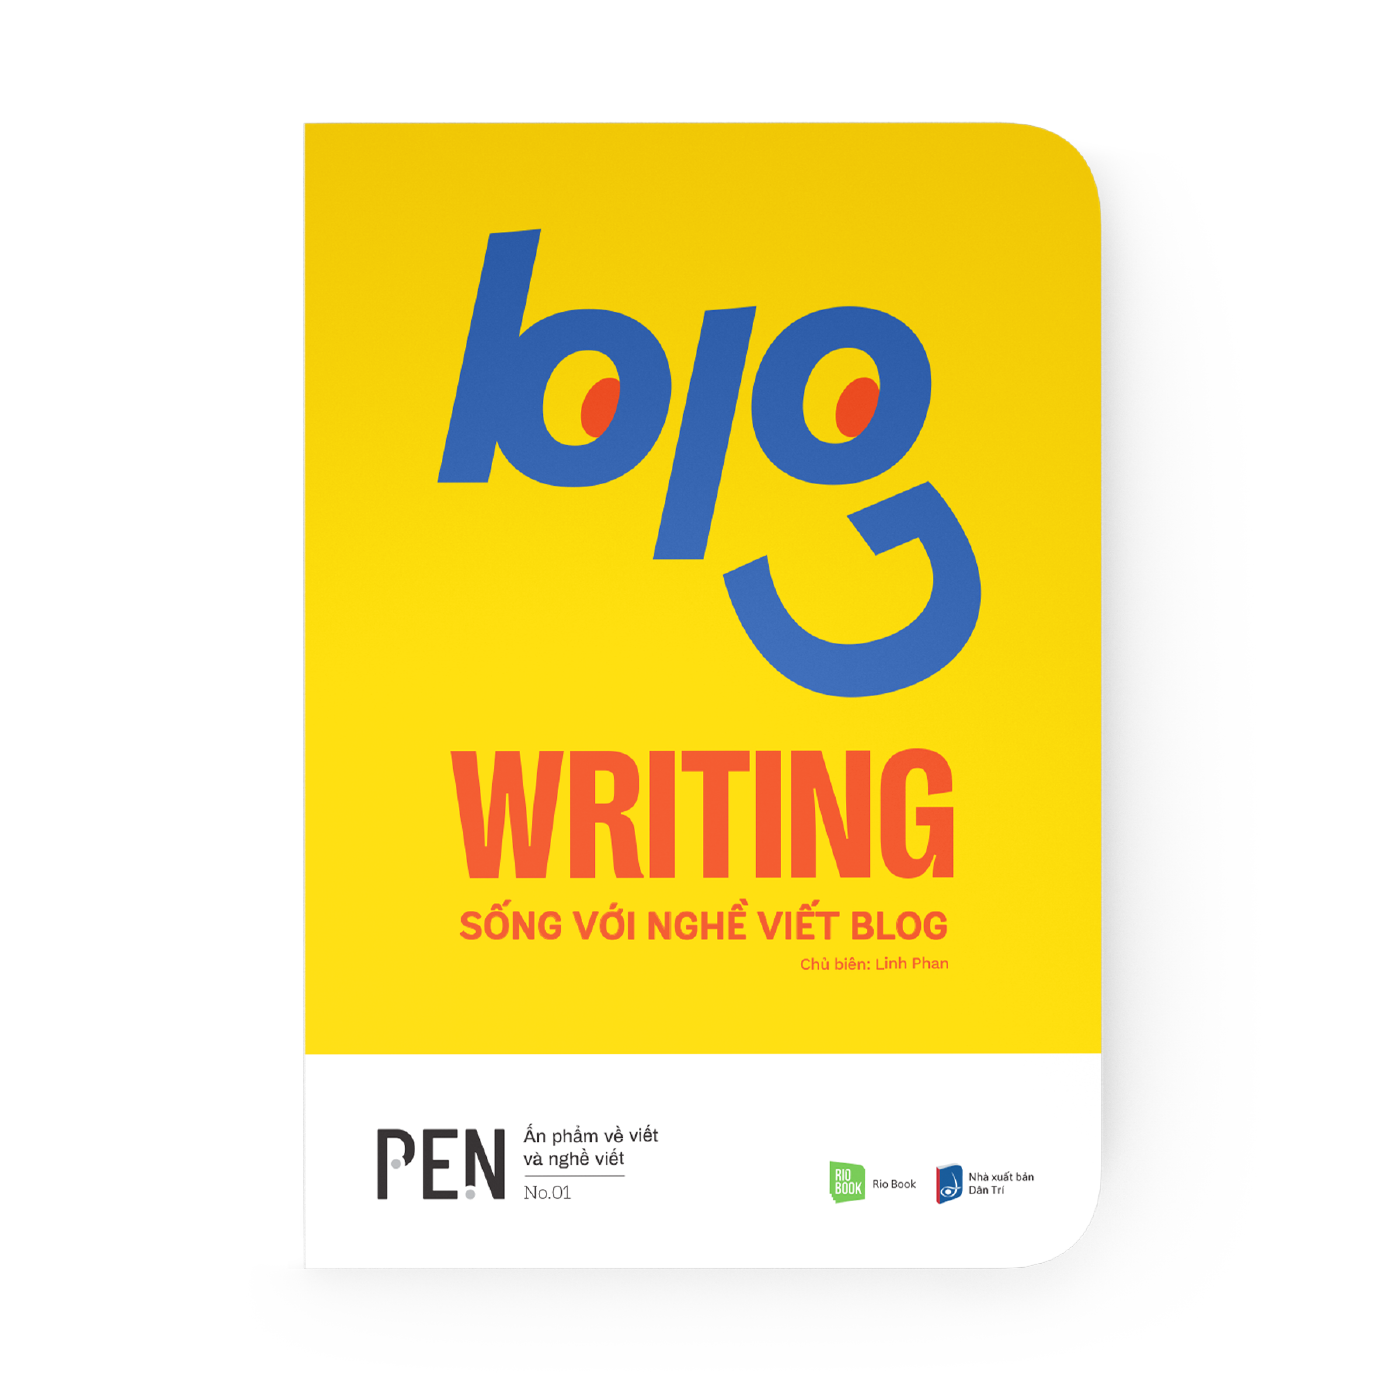 BLOG WRITING - Sống với nghề viết blog – RIO Book